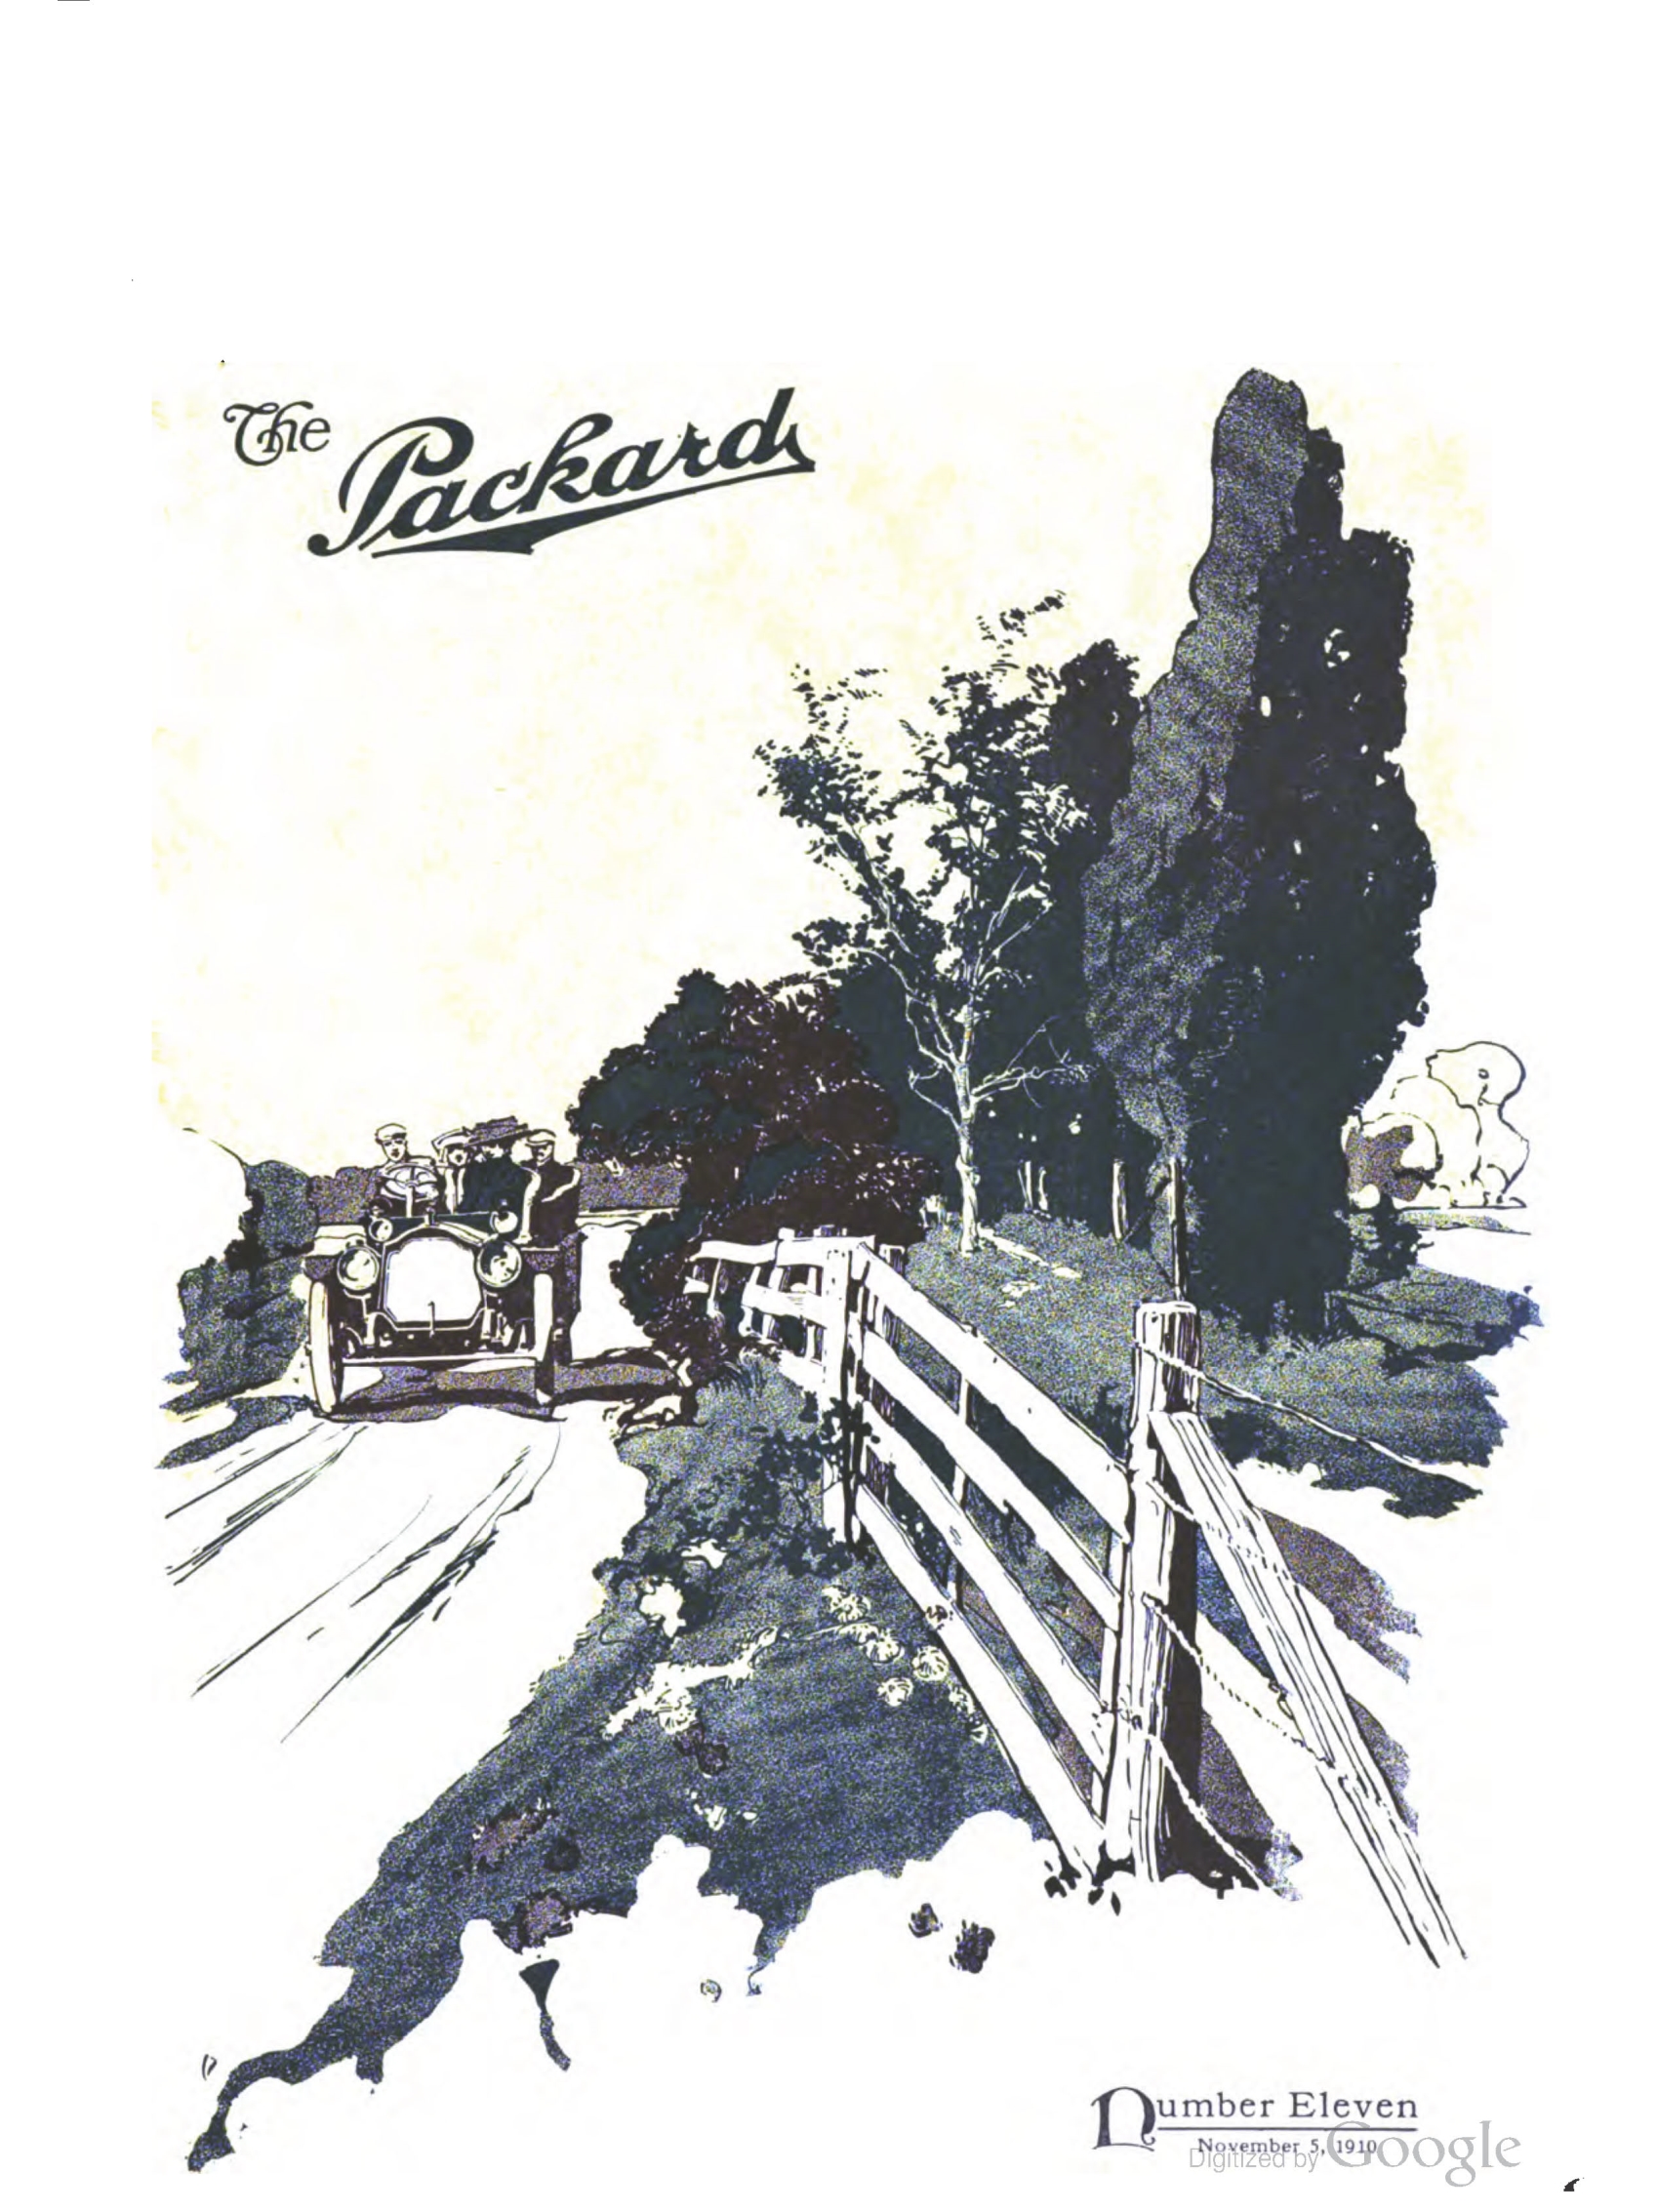 1910_The_Packard_Newsletter-193